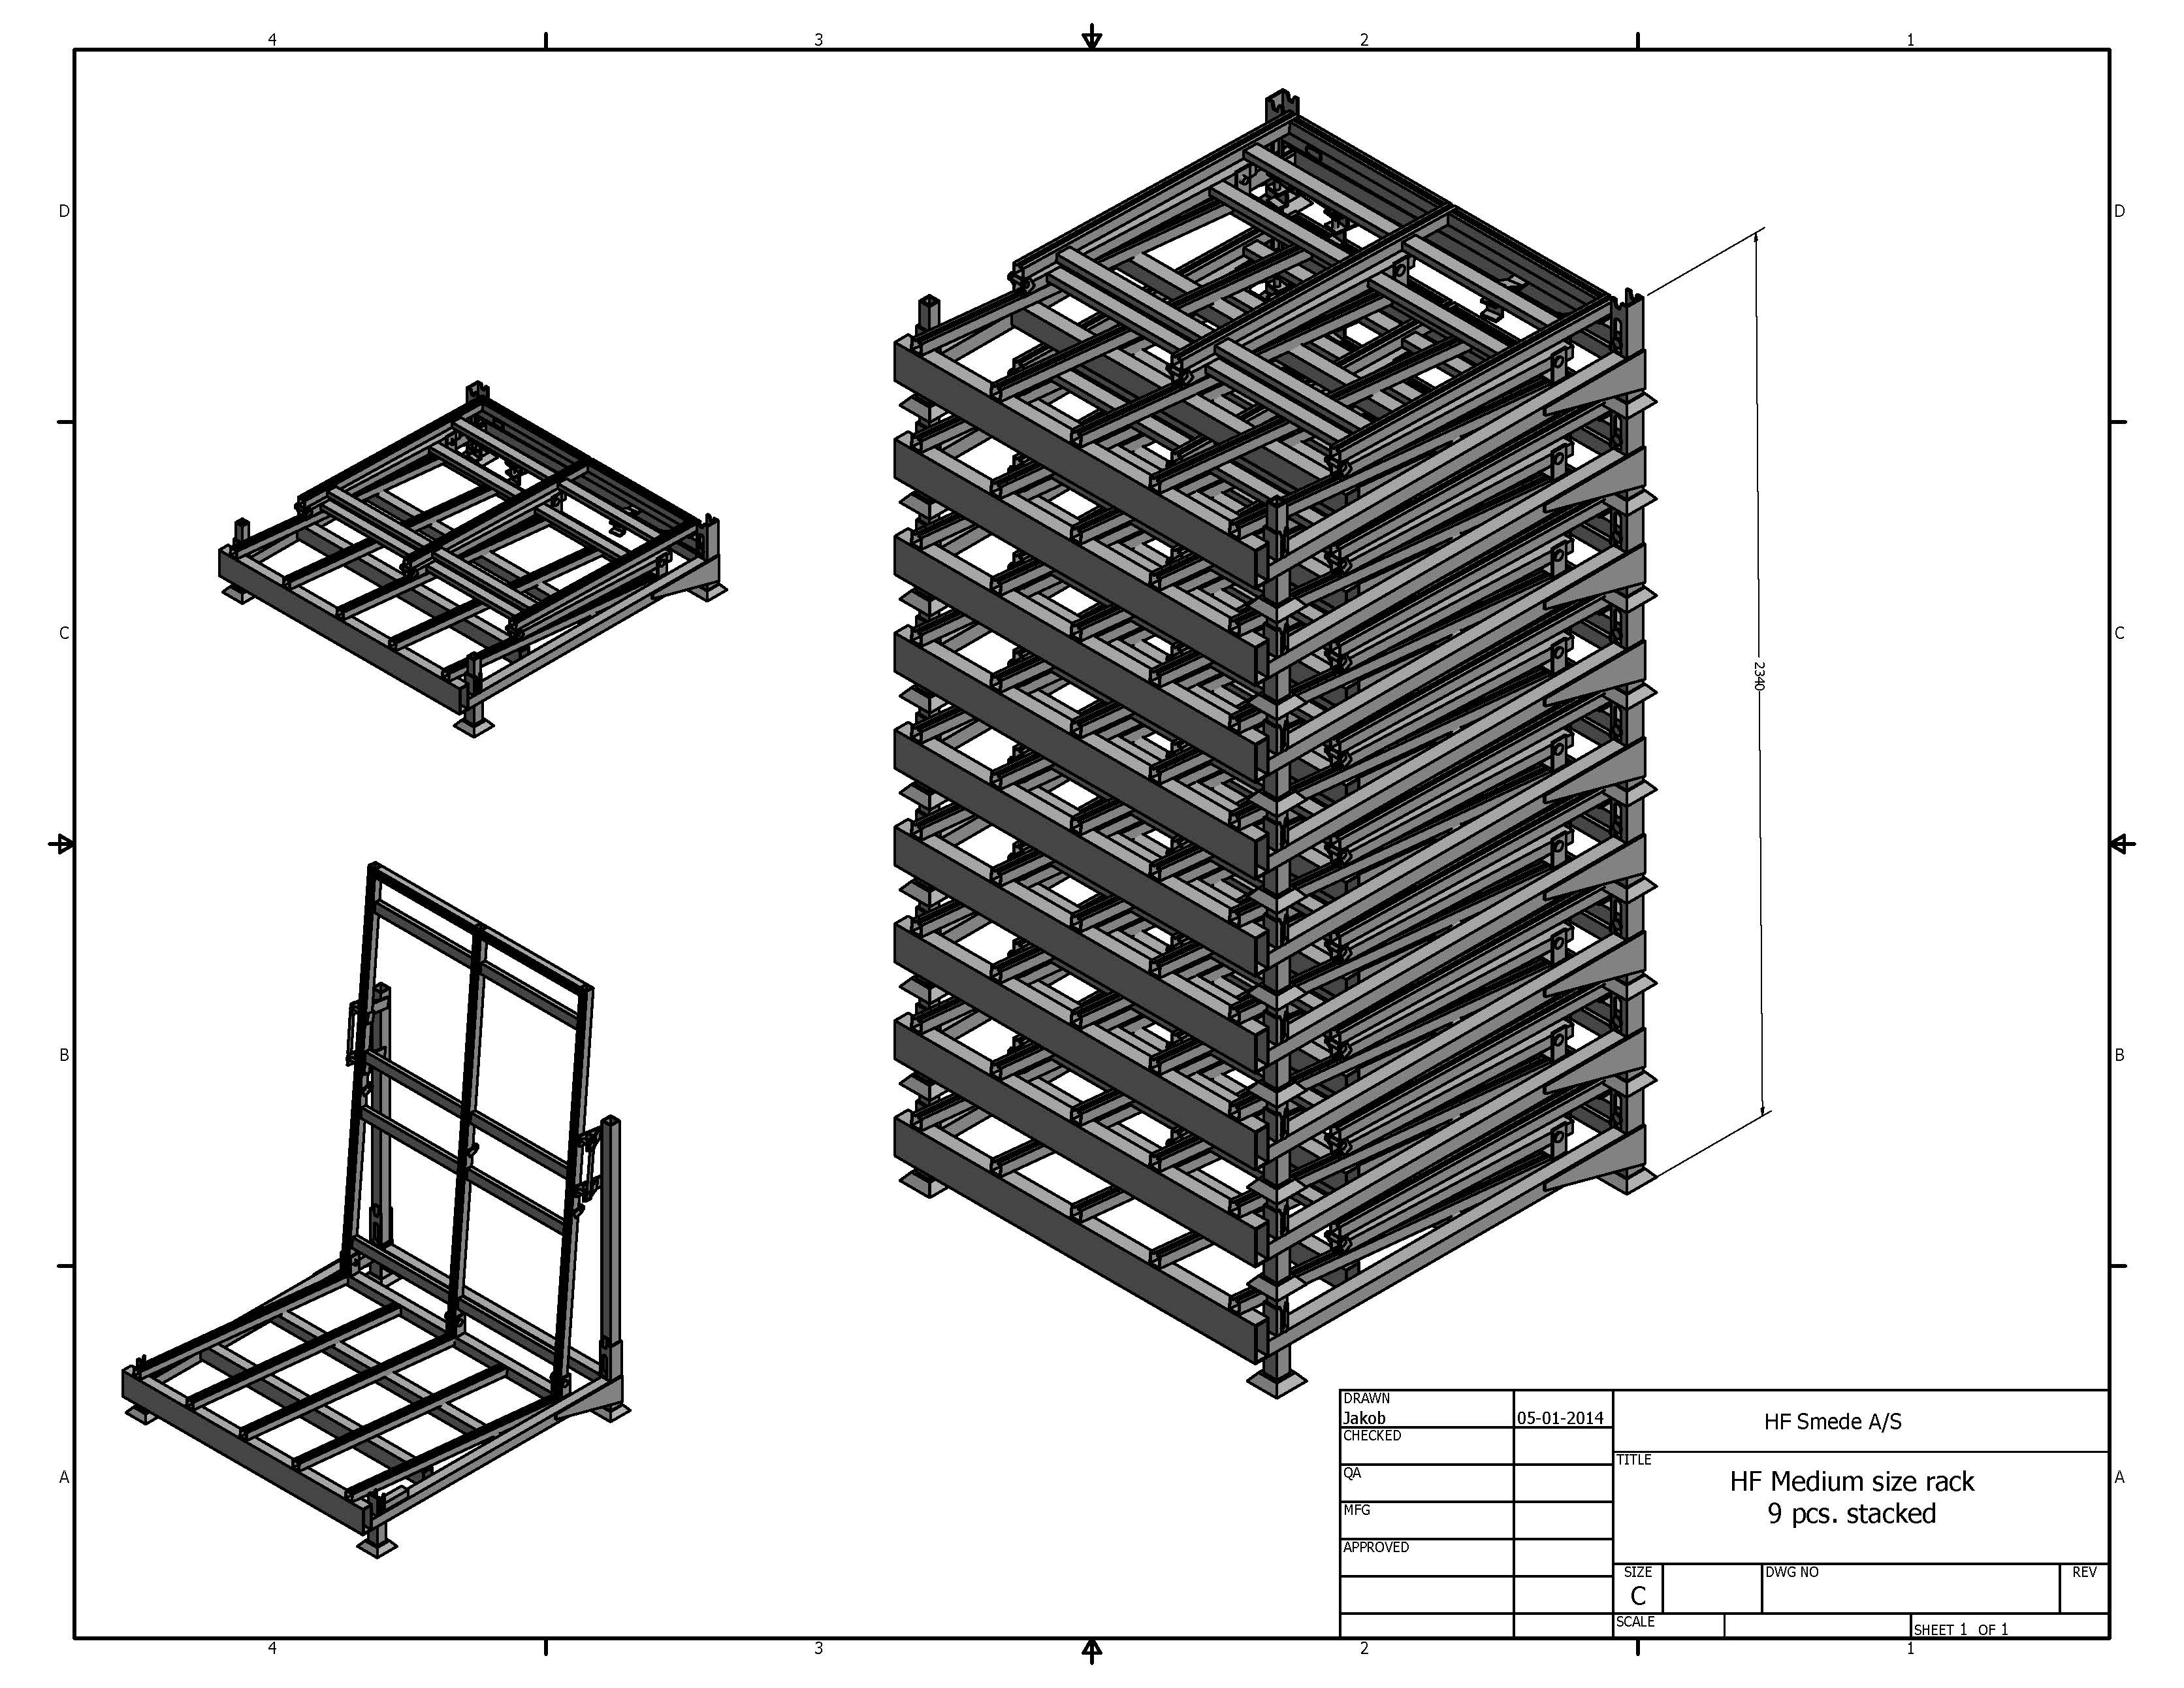 9 pcs-stacked-HF Medium size rack